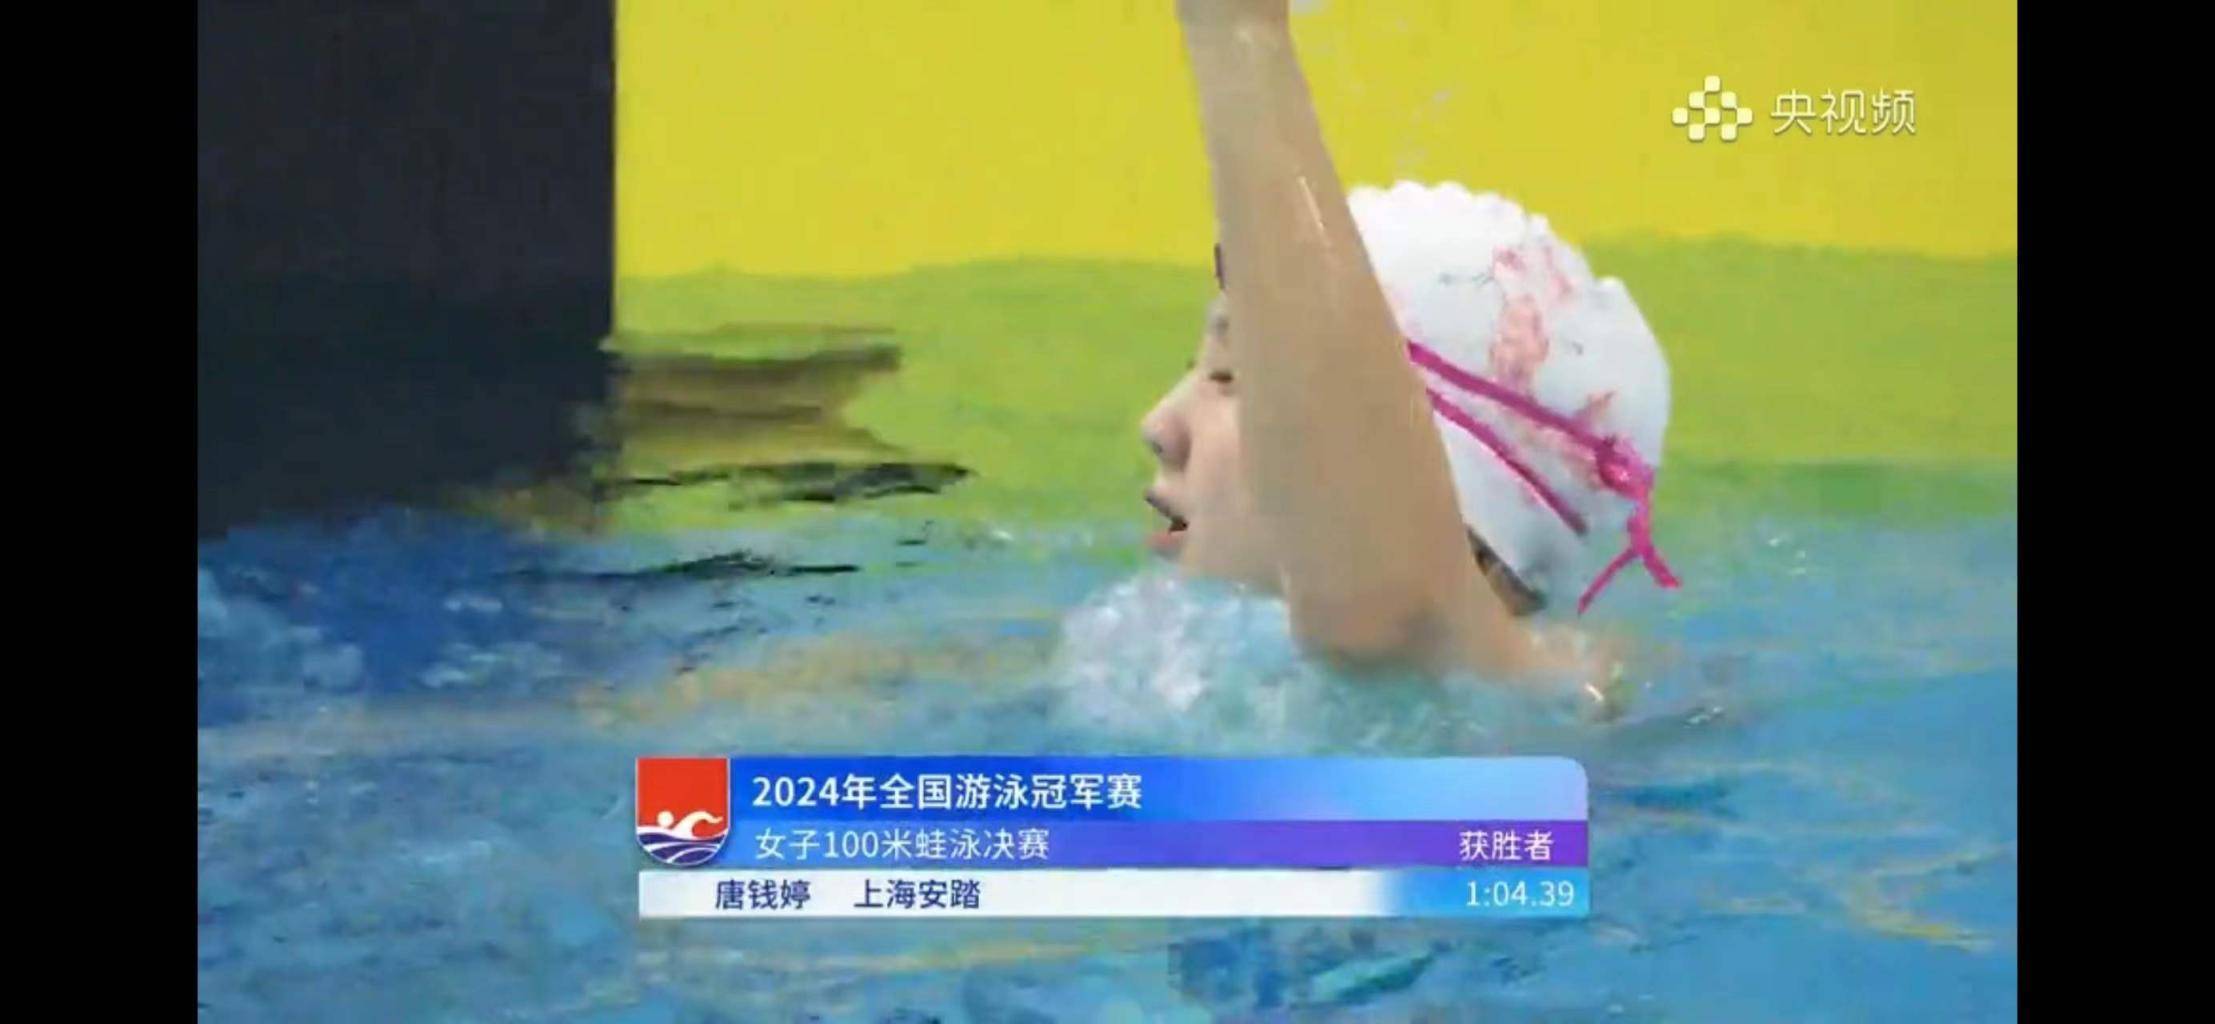 24小时内两破亚洲纪录 唐钱婷目标奥运会夺冠